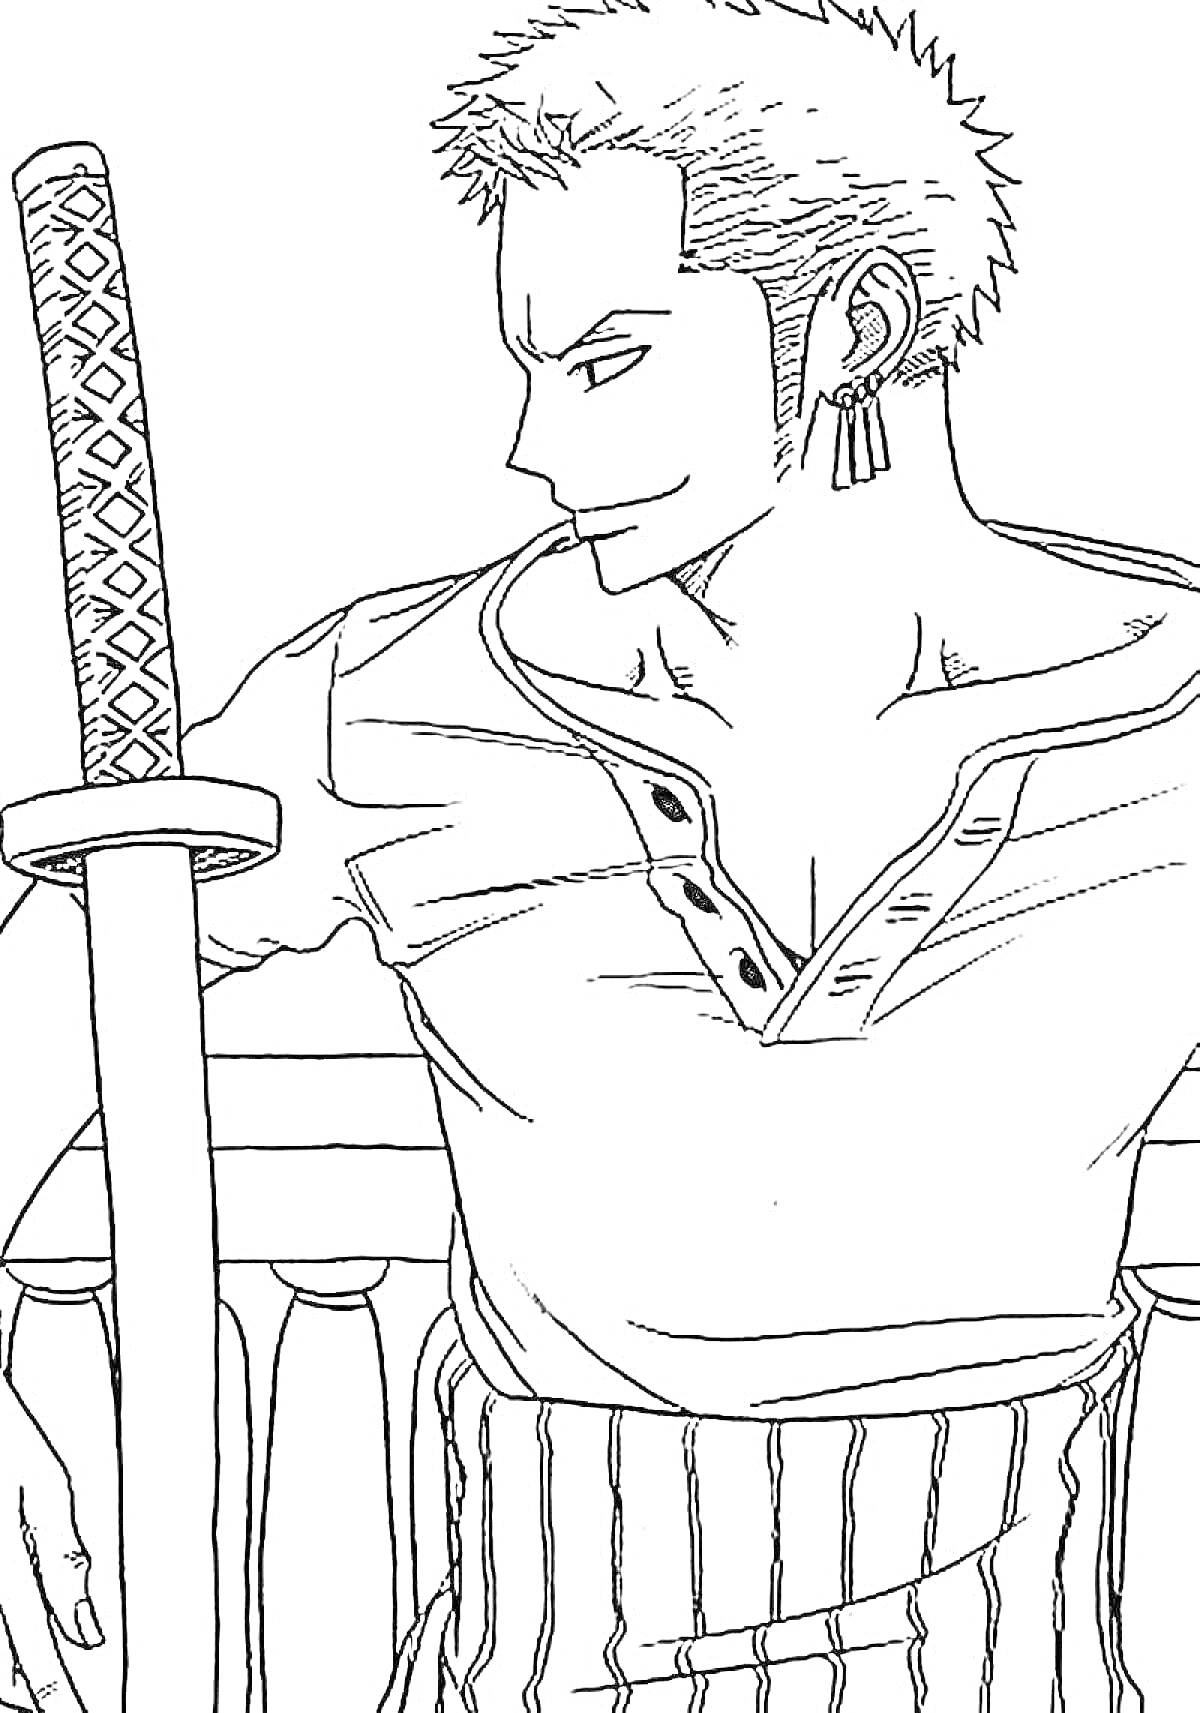 Раскраска Зоро с мечом, смотрящий в сторону, в распахнутой рубашке с пуговицами, стоящий возле перил